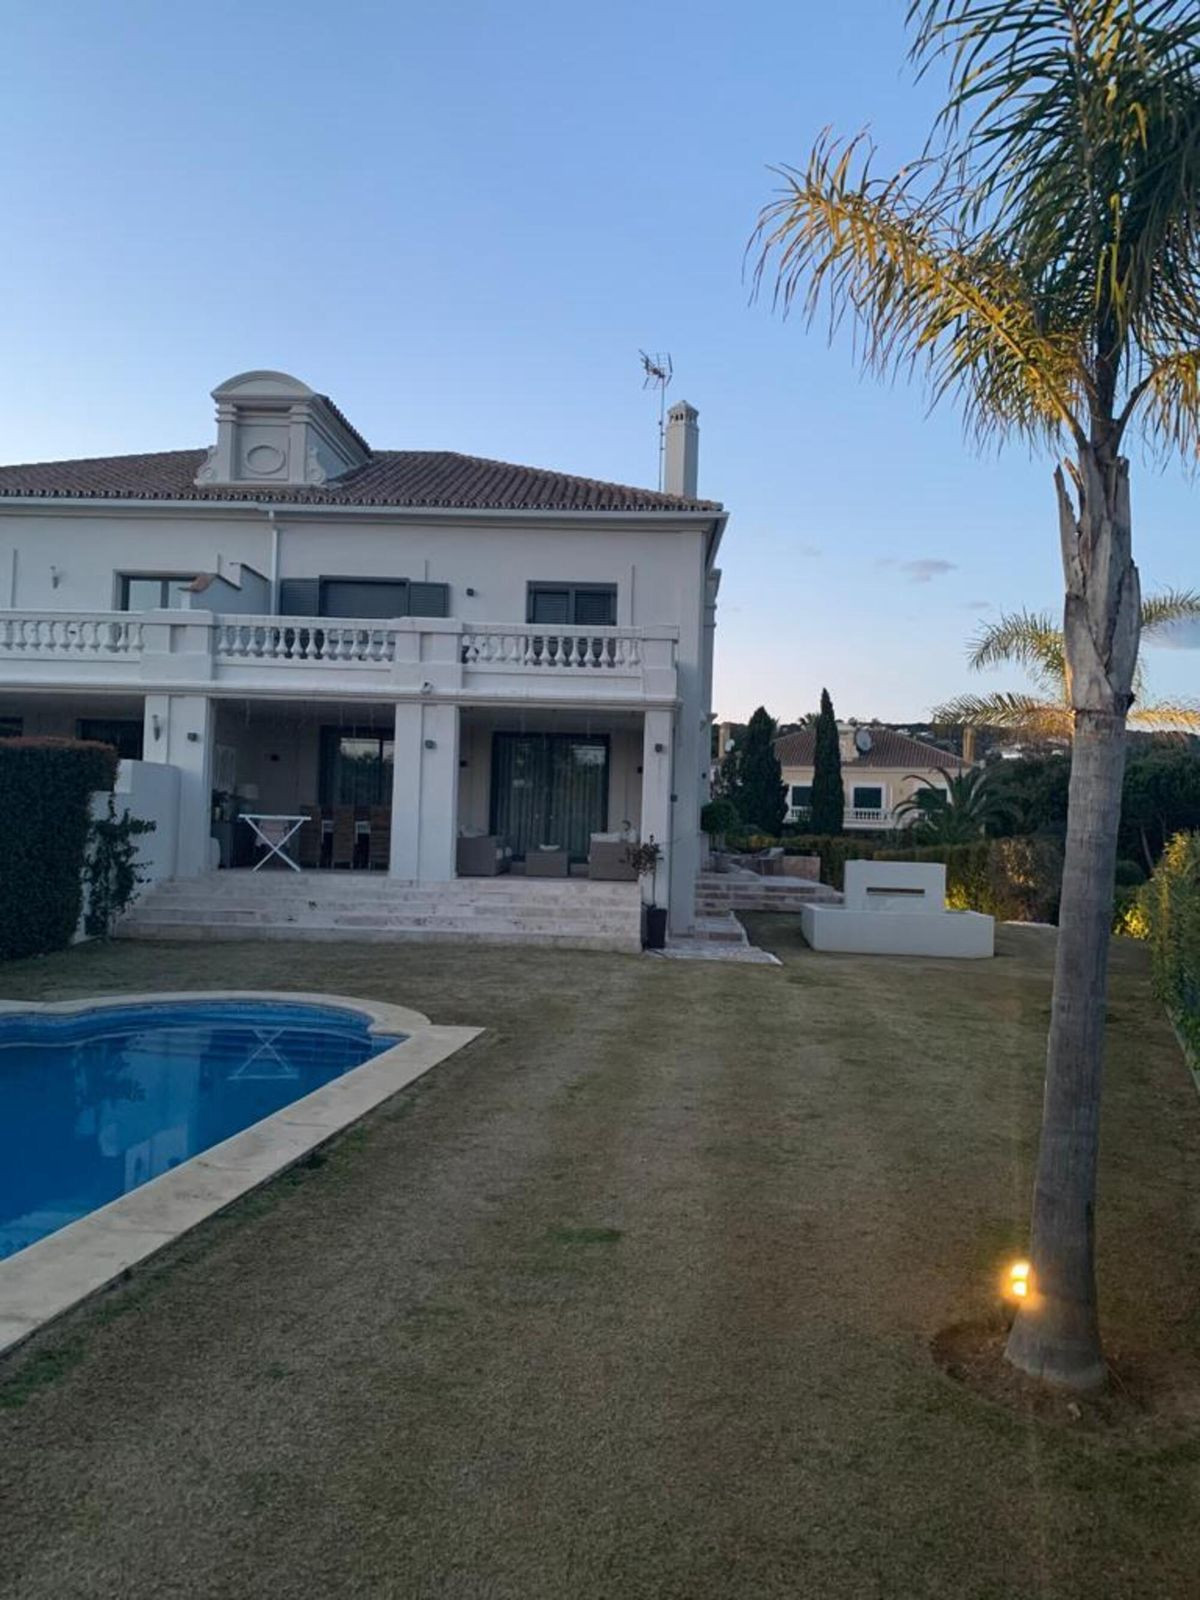 						Villa  Semi Detached
													for sale 
																			 in Sotogrande Alto
					